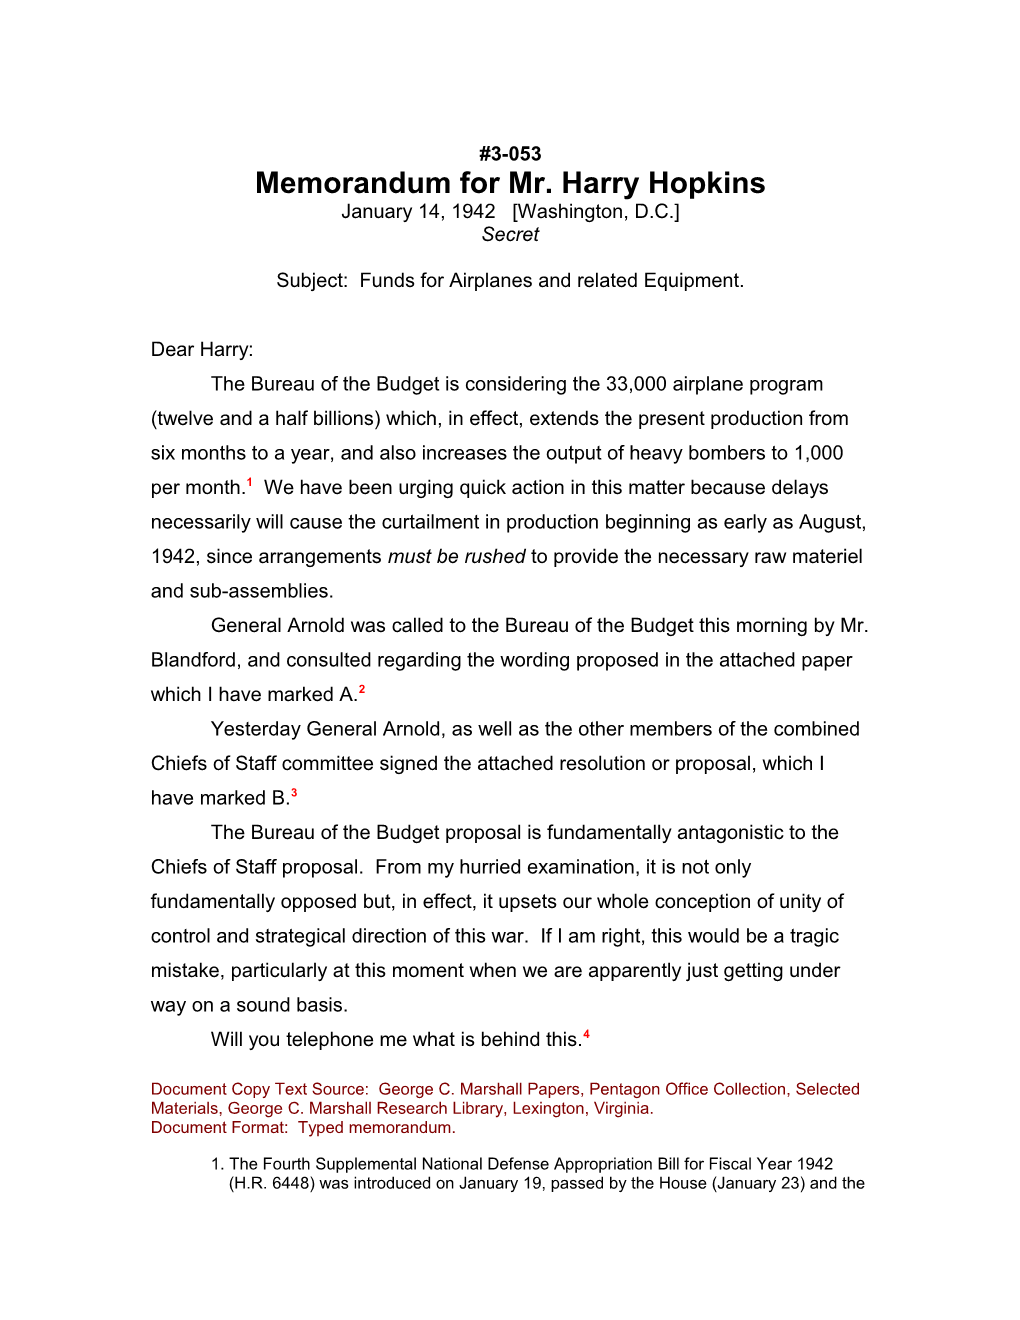 Memorandum for Mr. Harry Hopkins